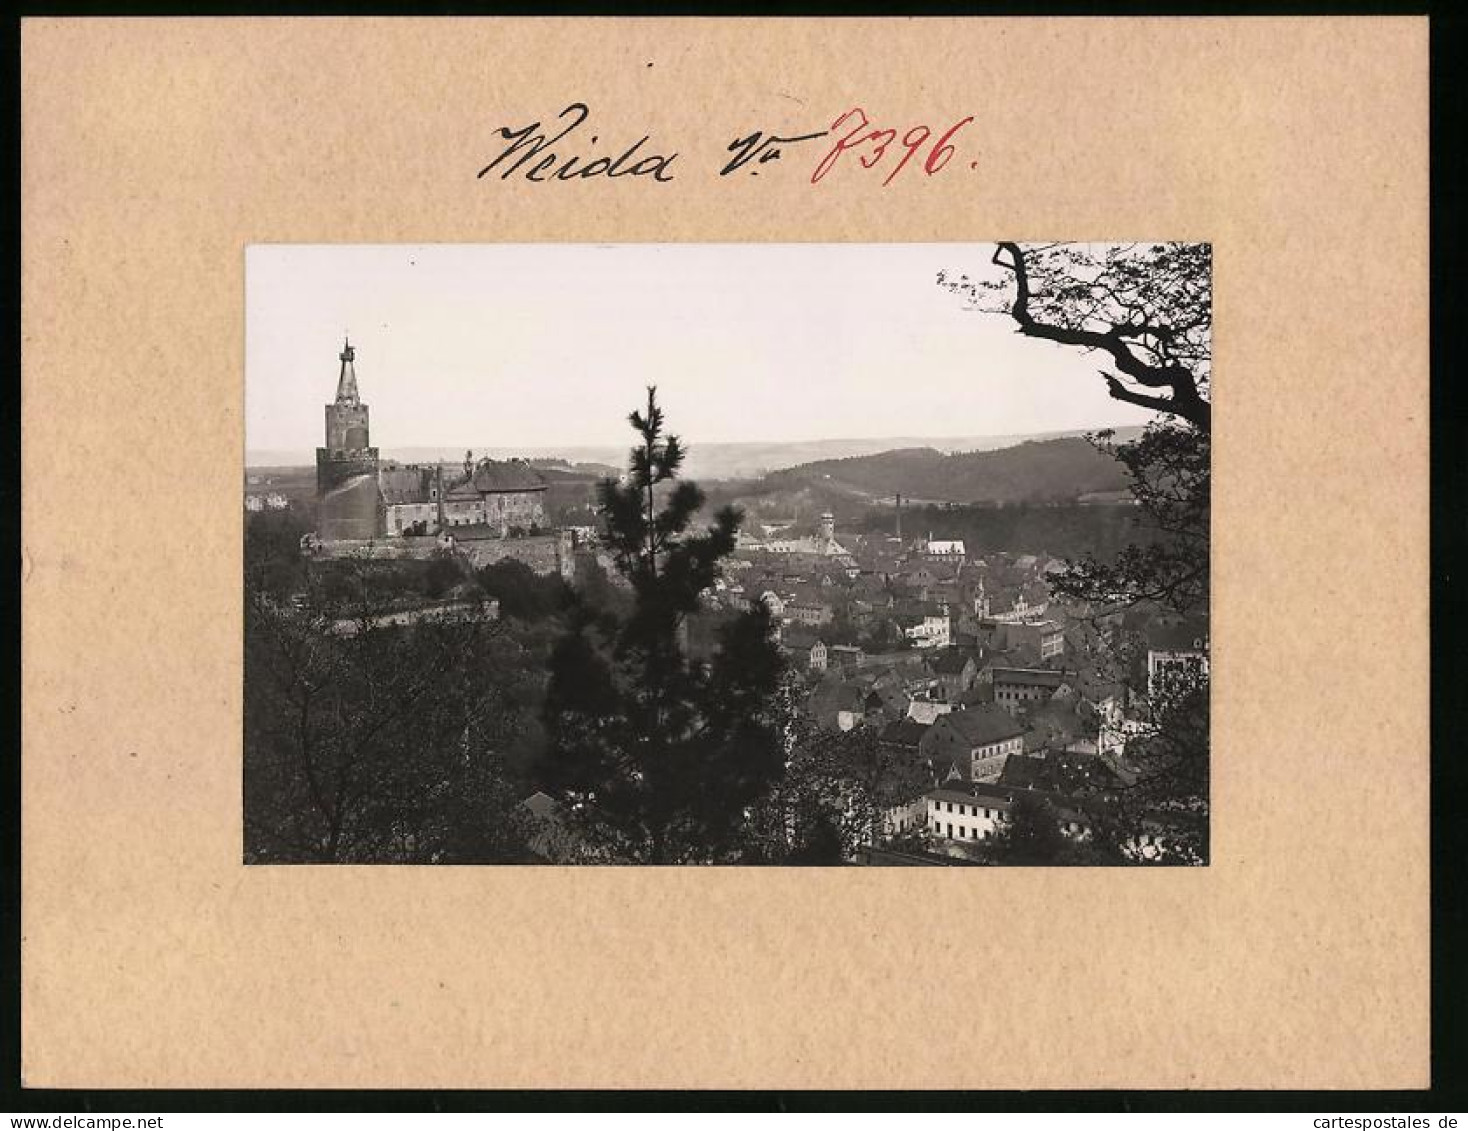 Fotografie Brück & Sohn Meissen, Ansicht Weida I. Th., Blick Zur Stadt Mit Schloss Osterburg  - Lugares